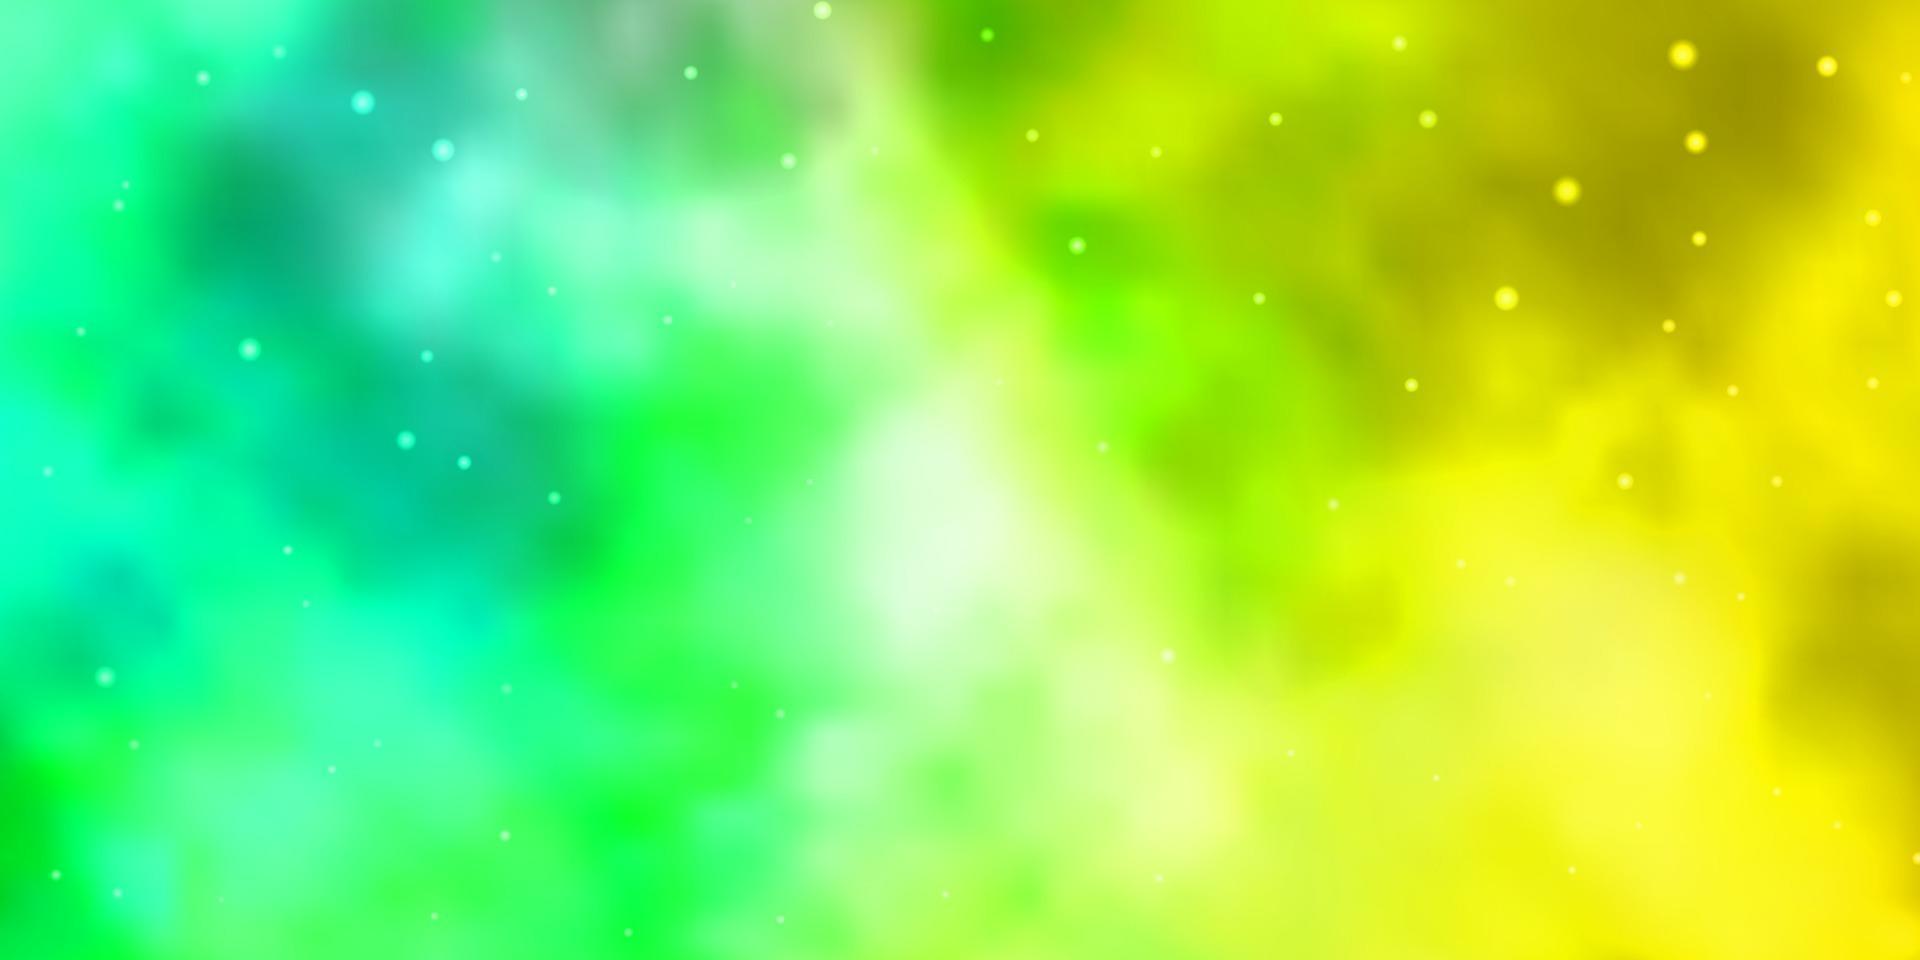 plantilla de vector verde claro, amarillo con estrellas de neón.